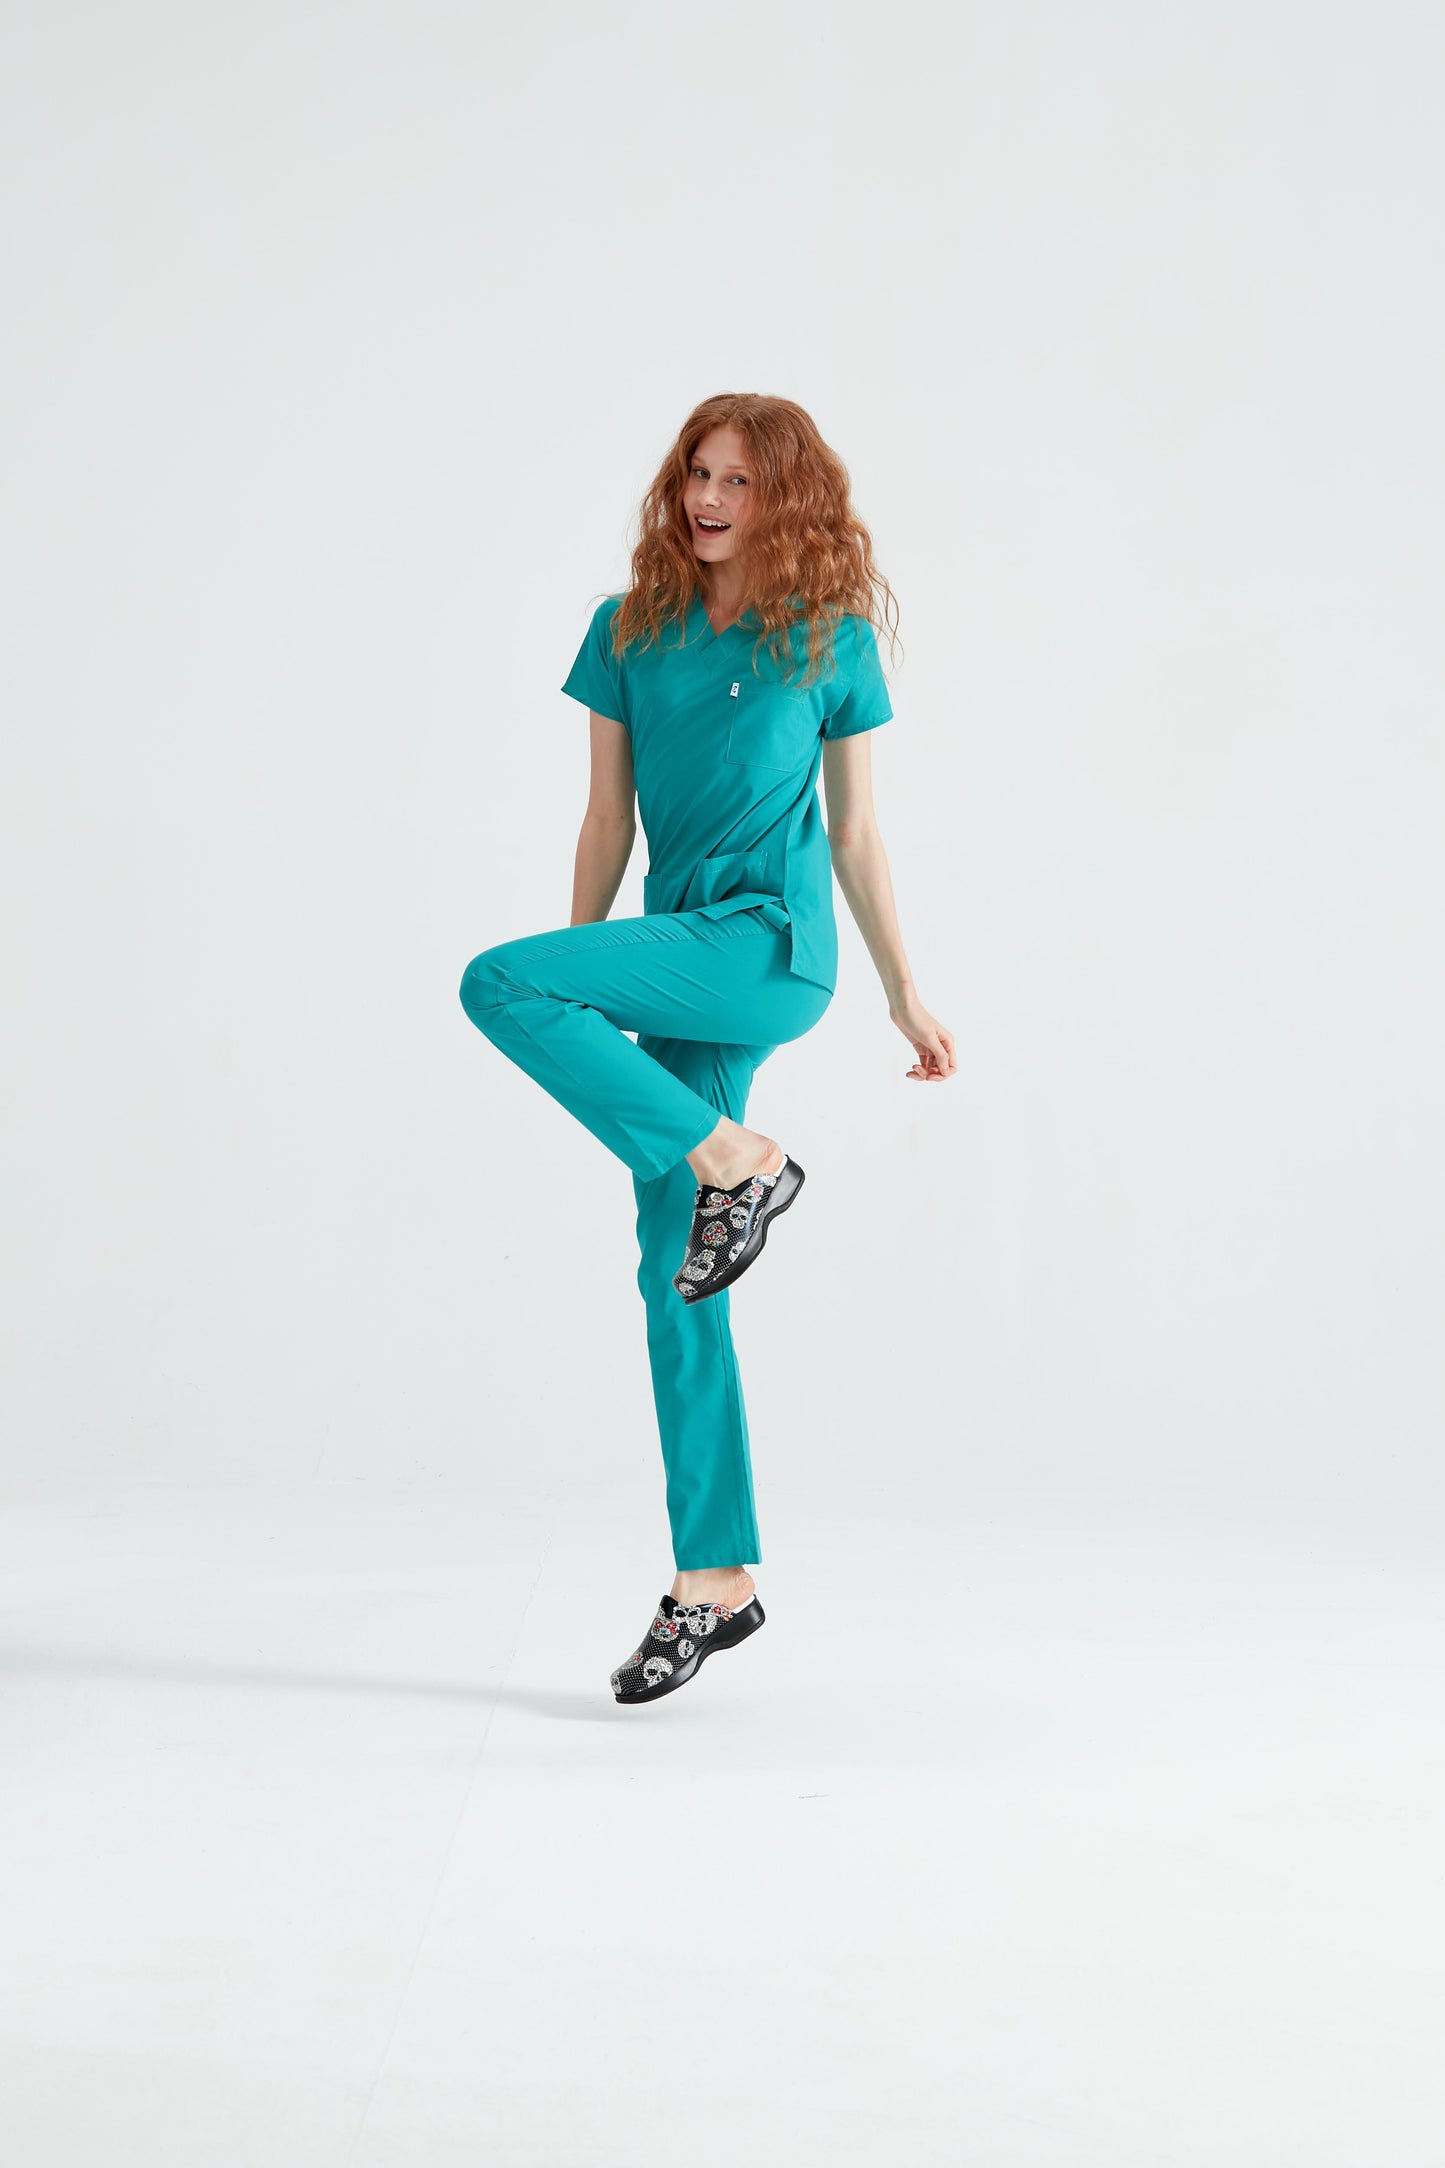 Costum Medical Elastan Verde Chirurgical, Pentru Femei - Model Classic Flex